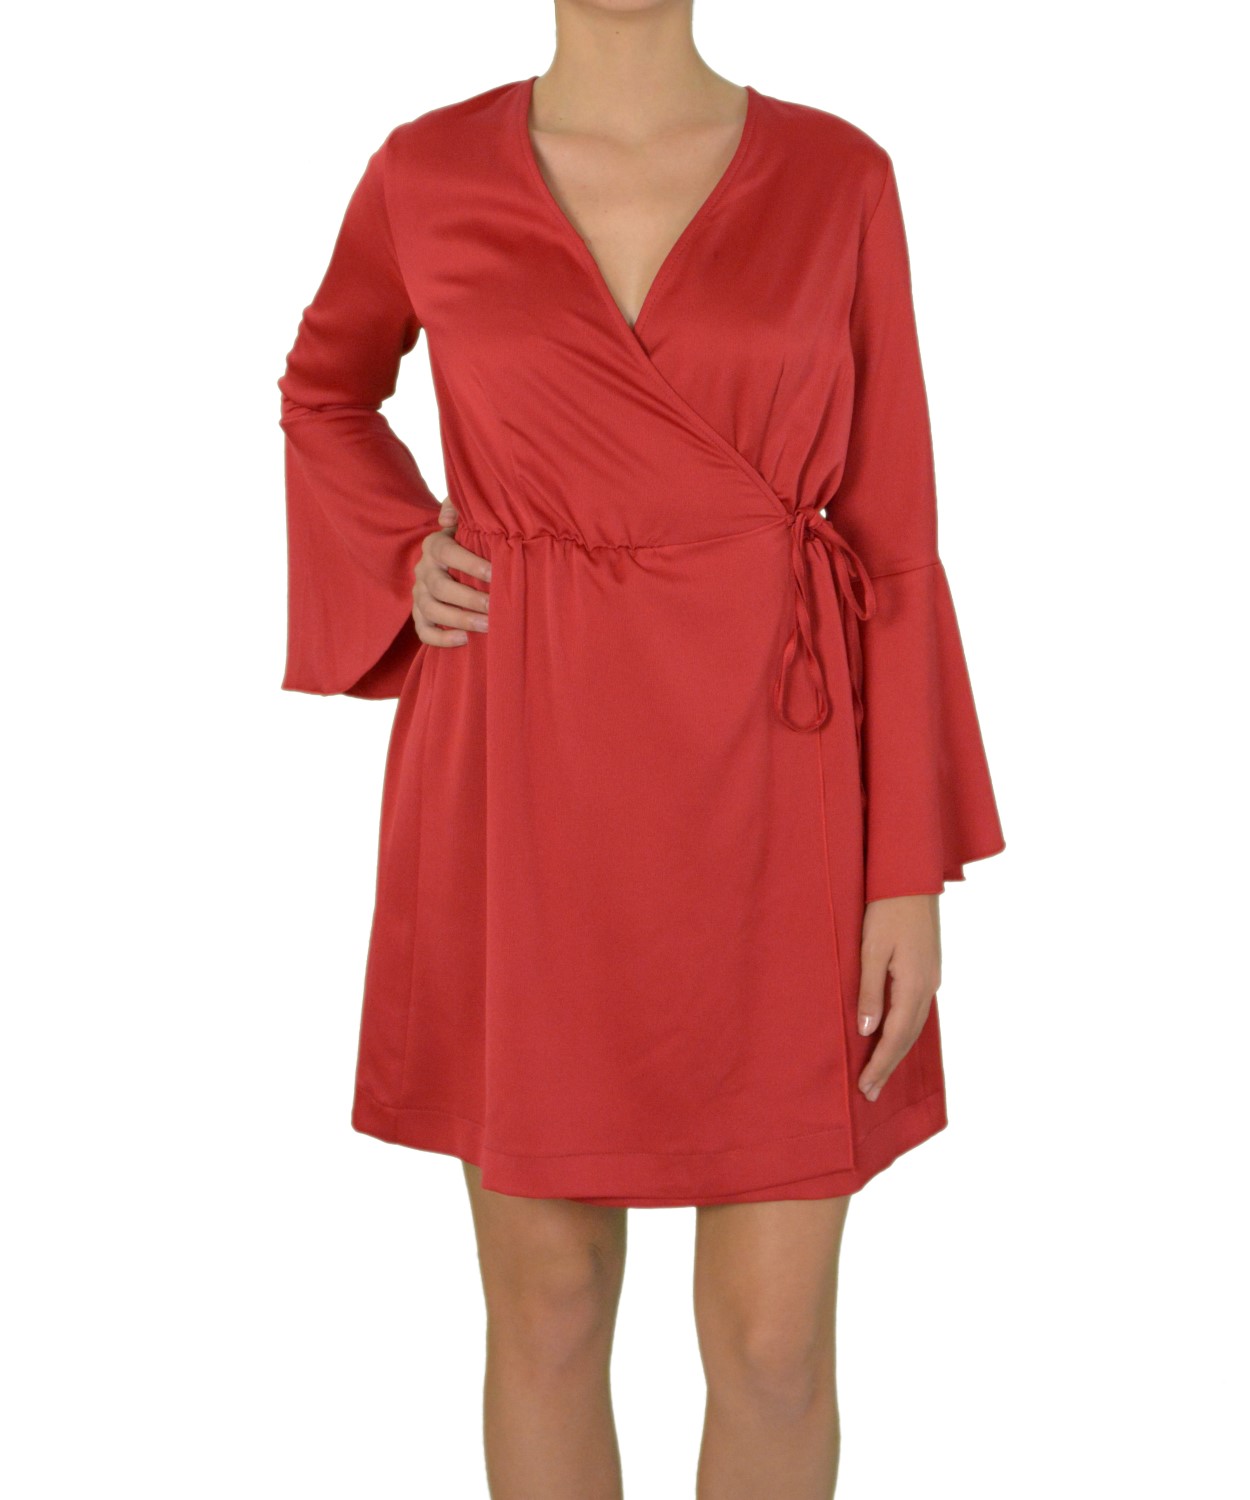 Γυναικείο φόρεμα ντραπέ με καμπάνα στο μανίκι κόκκινο 8112199